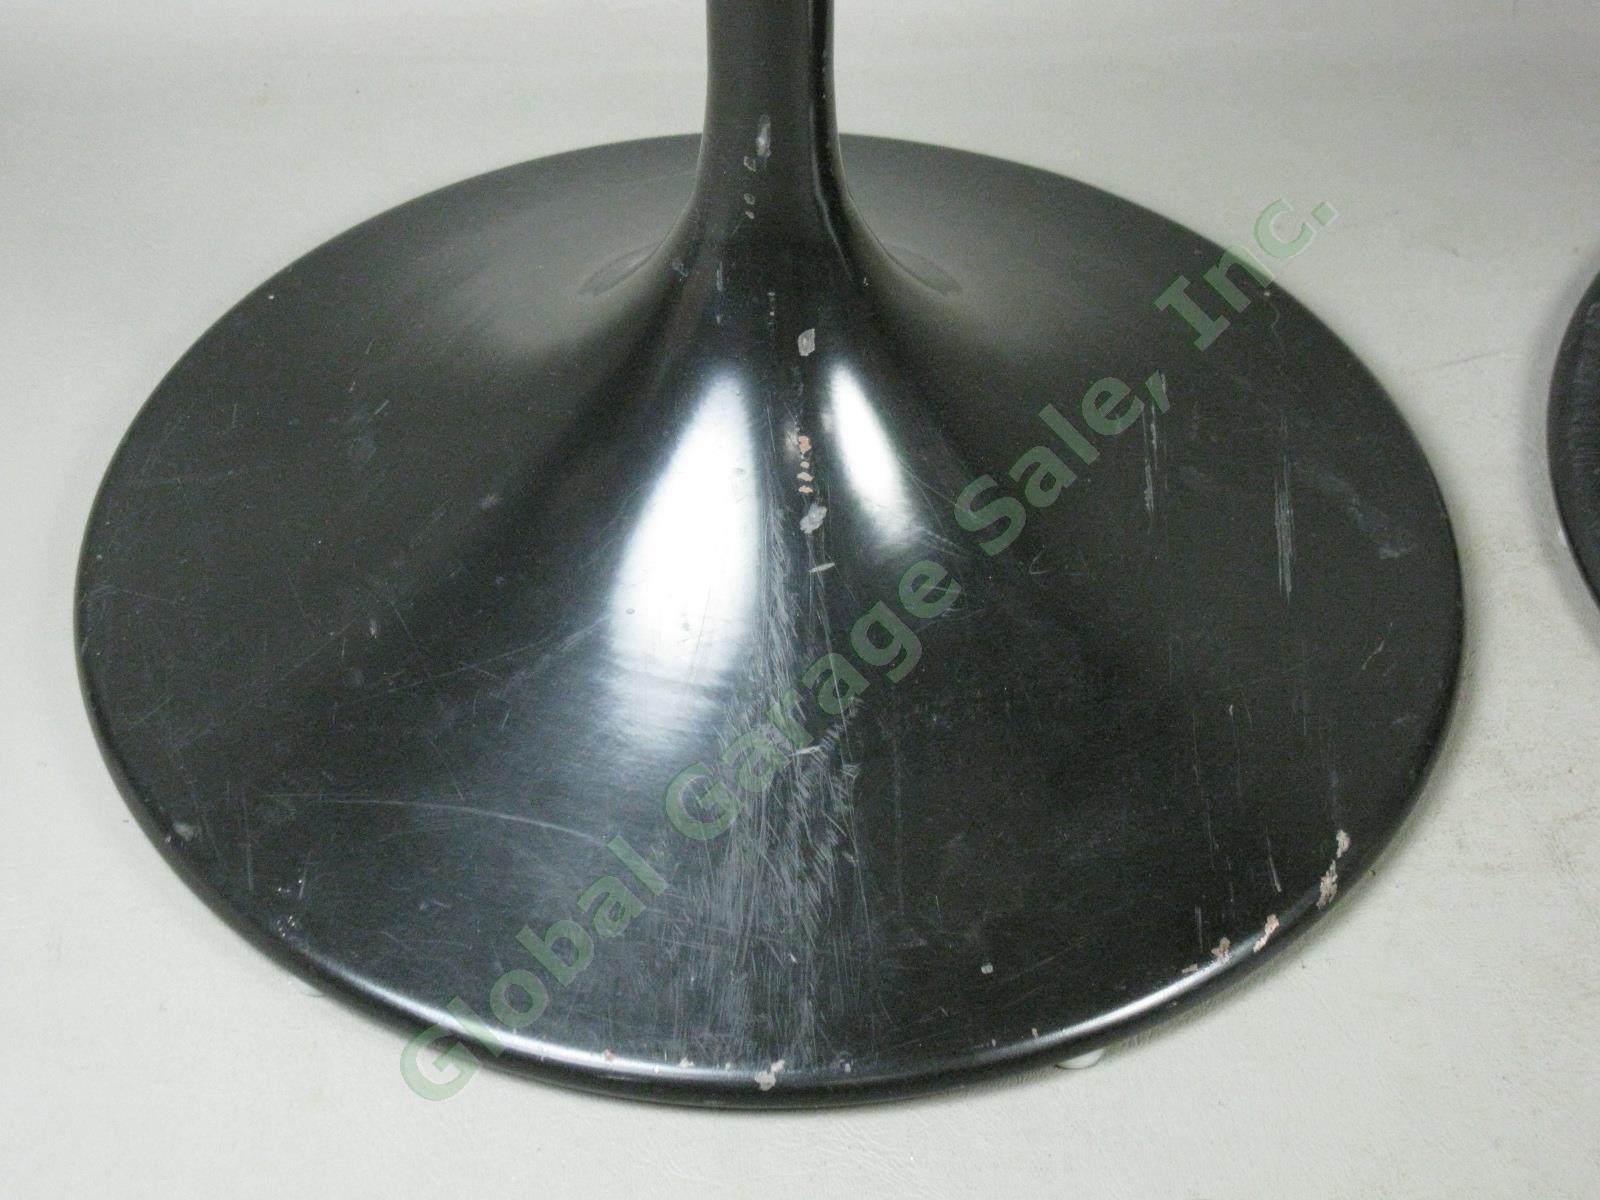 Bose 901 Black Tulip Speaker Pedestal Stands 3 Screw Holes Series II One Owner 2